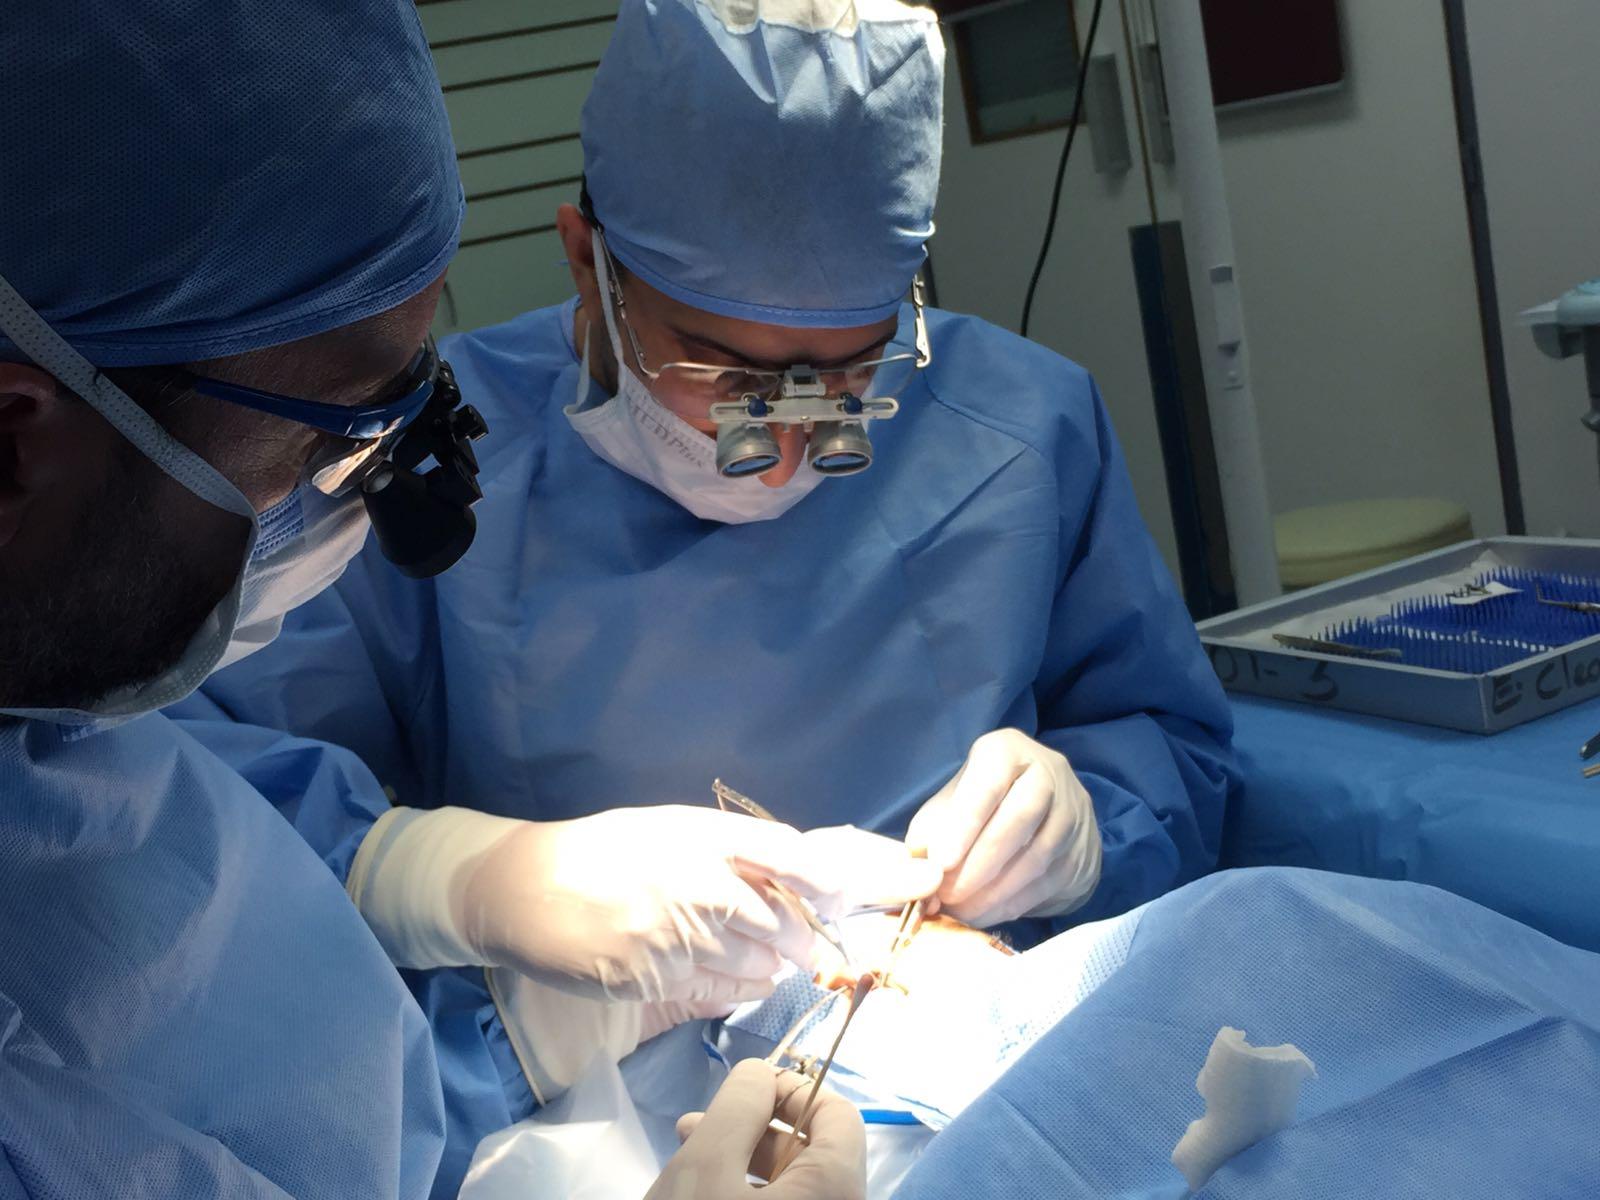  أجرى 9 عمليات جراحية دقيقة للعيون وفحص 32 حالة مرضية  مجمع السلمانية الطبي يستضيف الإستشاري مصطفى مهيار